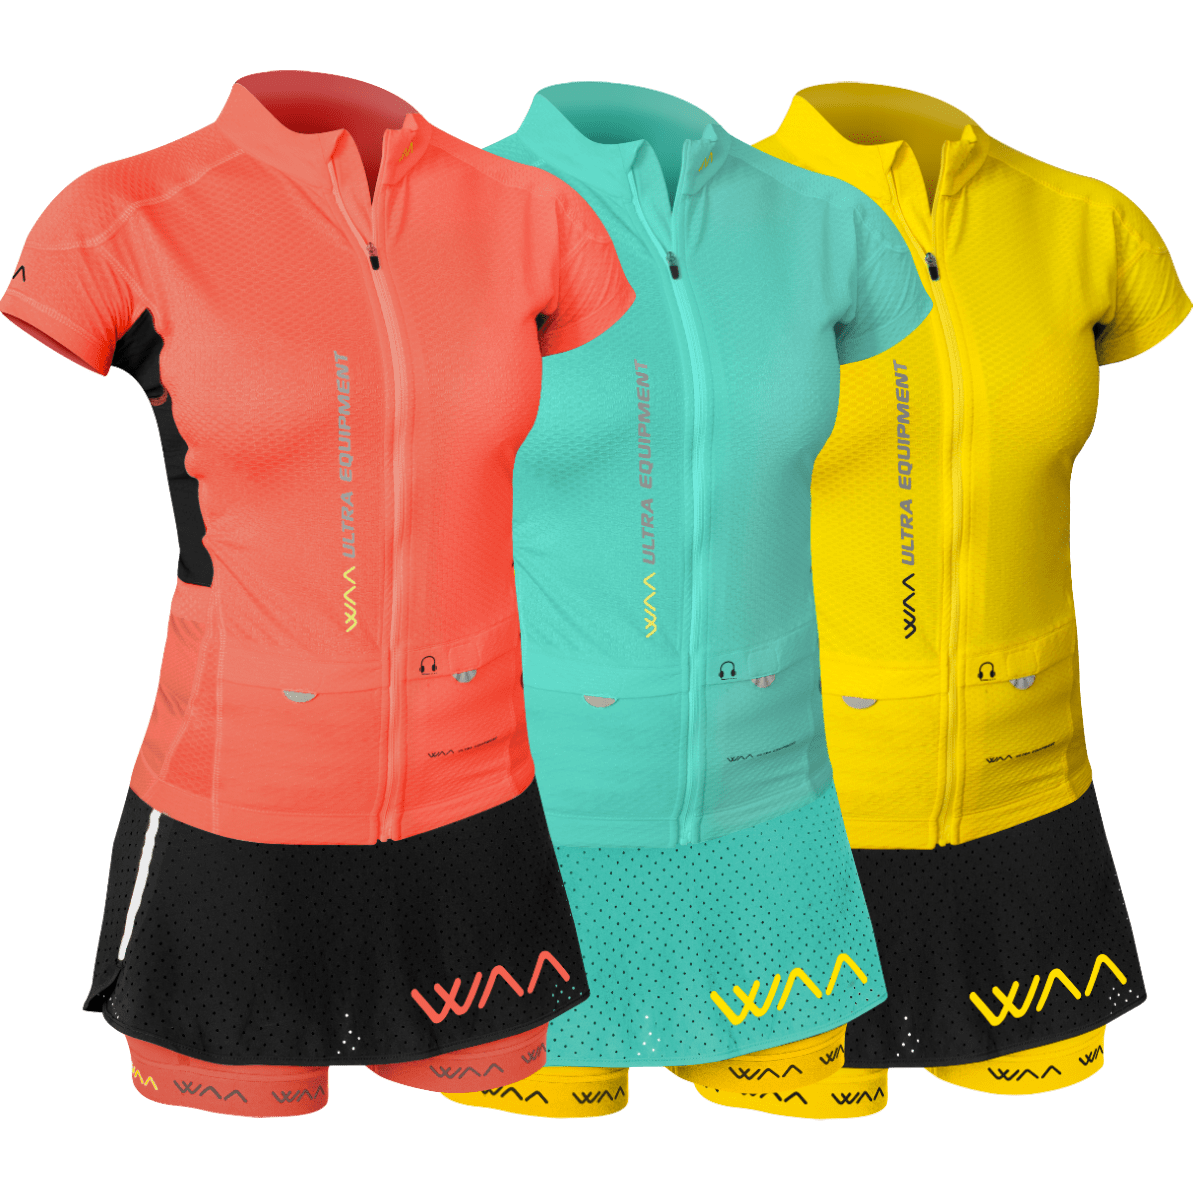 WAA Ultra Carrier Short Sleeves - Original Edition - Women's